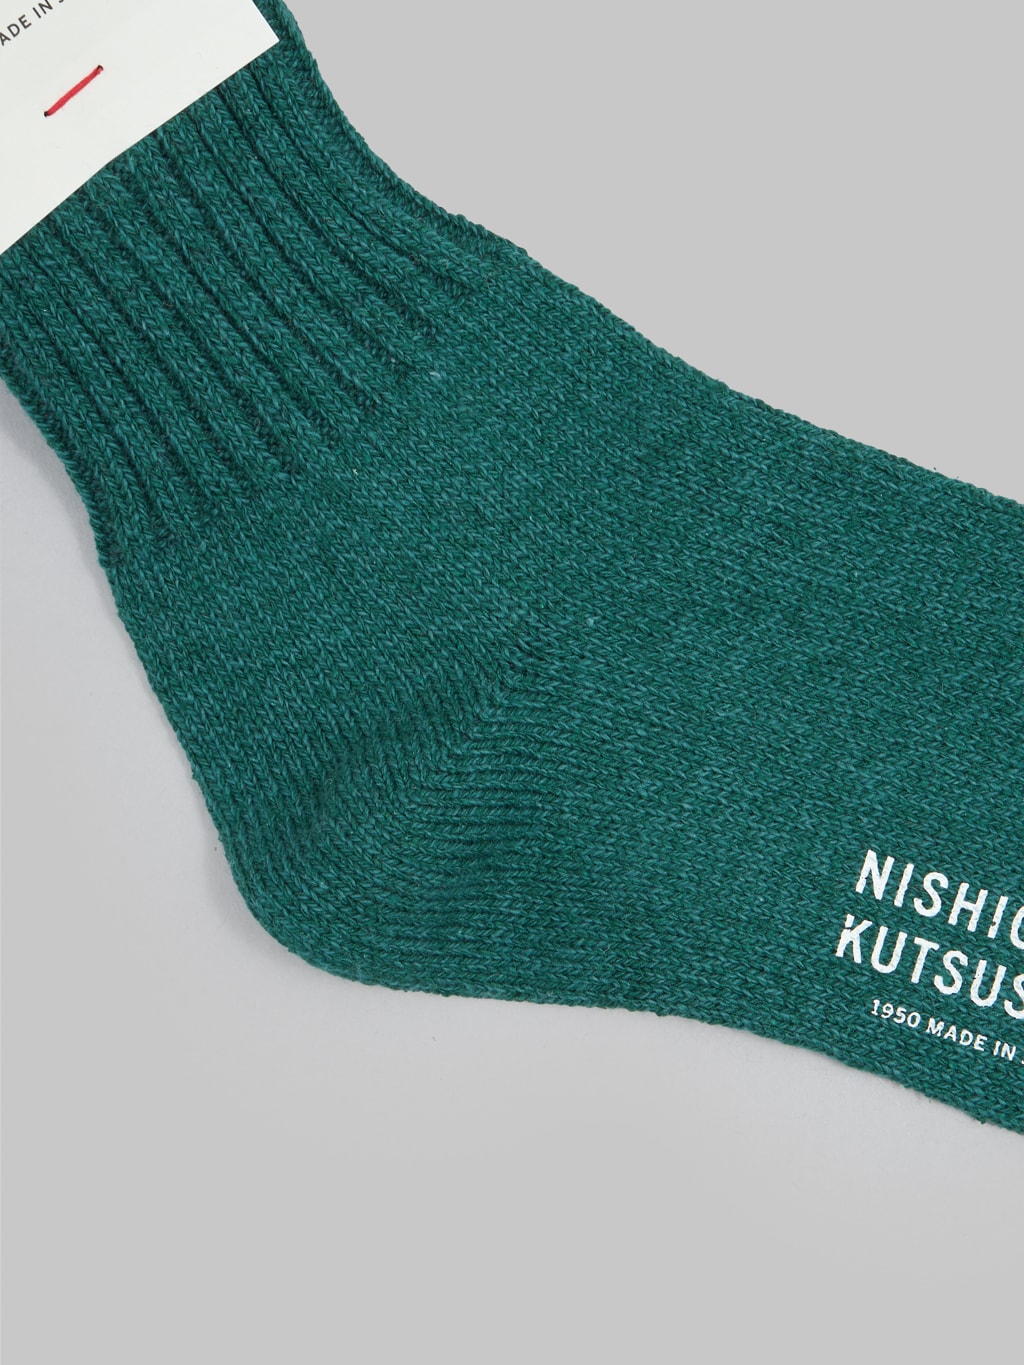 nishiguchi kutsushita silk cotton socks amazon green heel